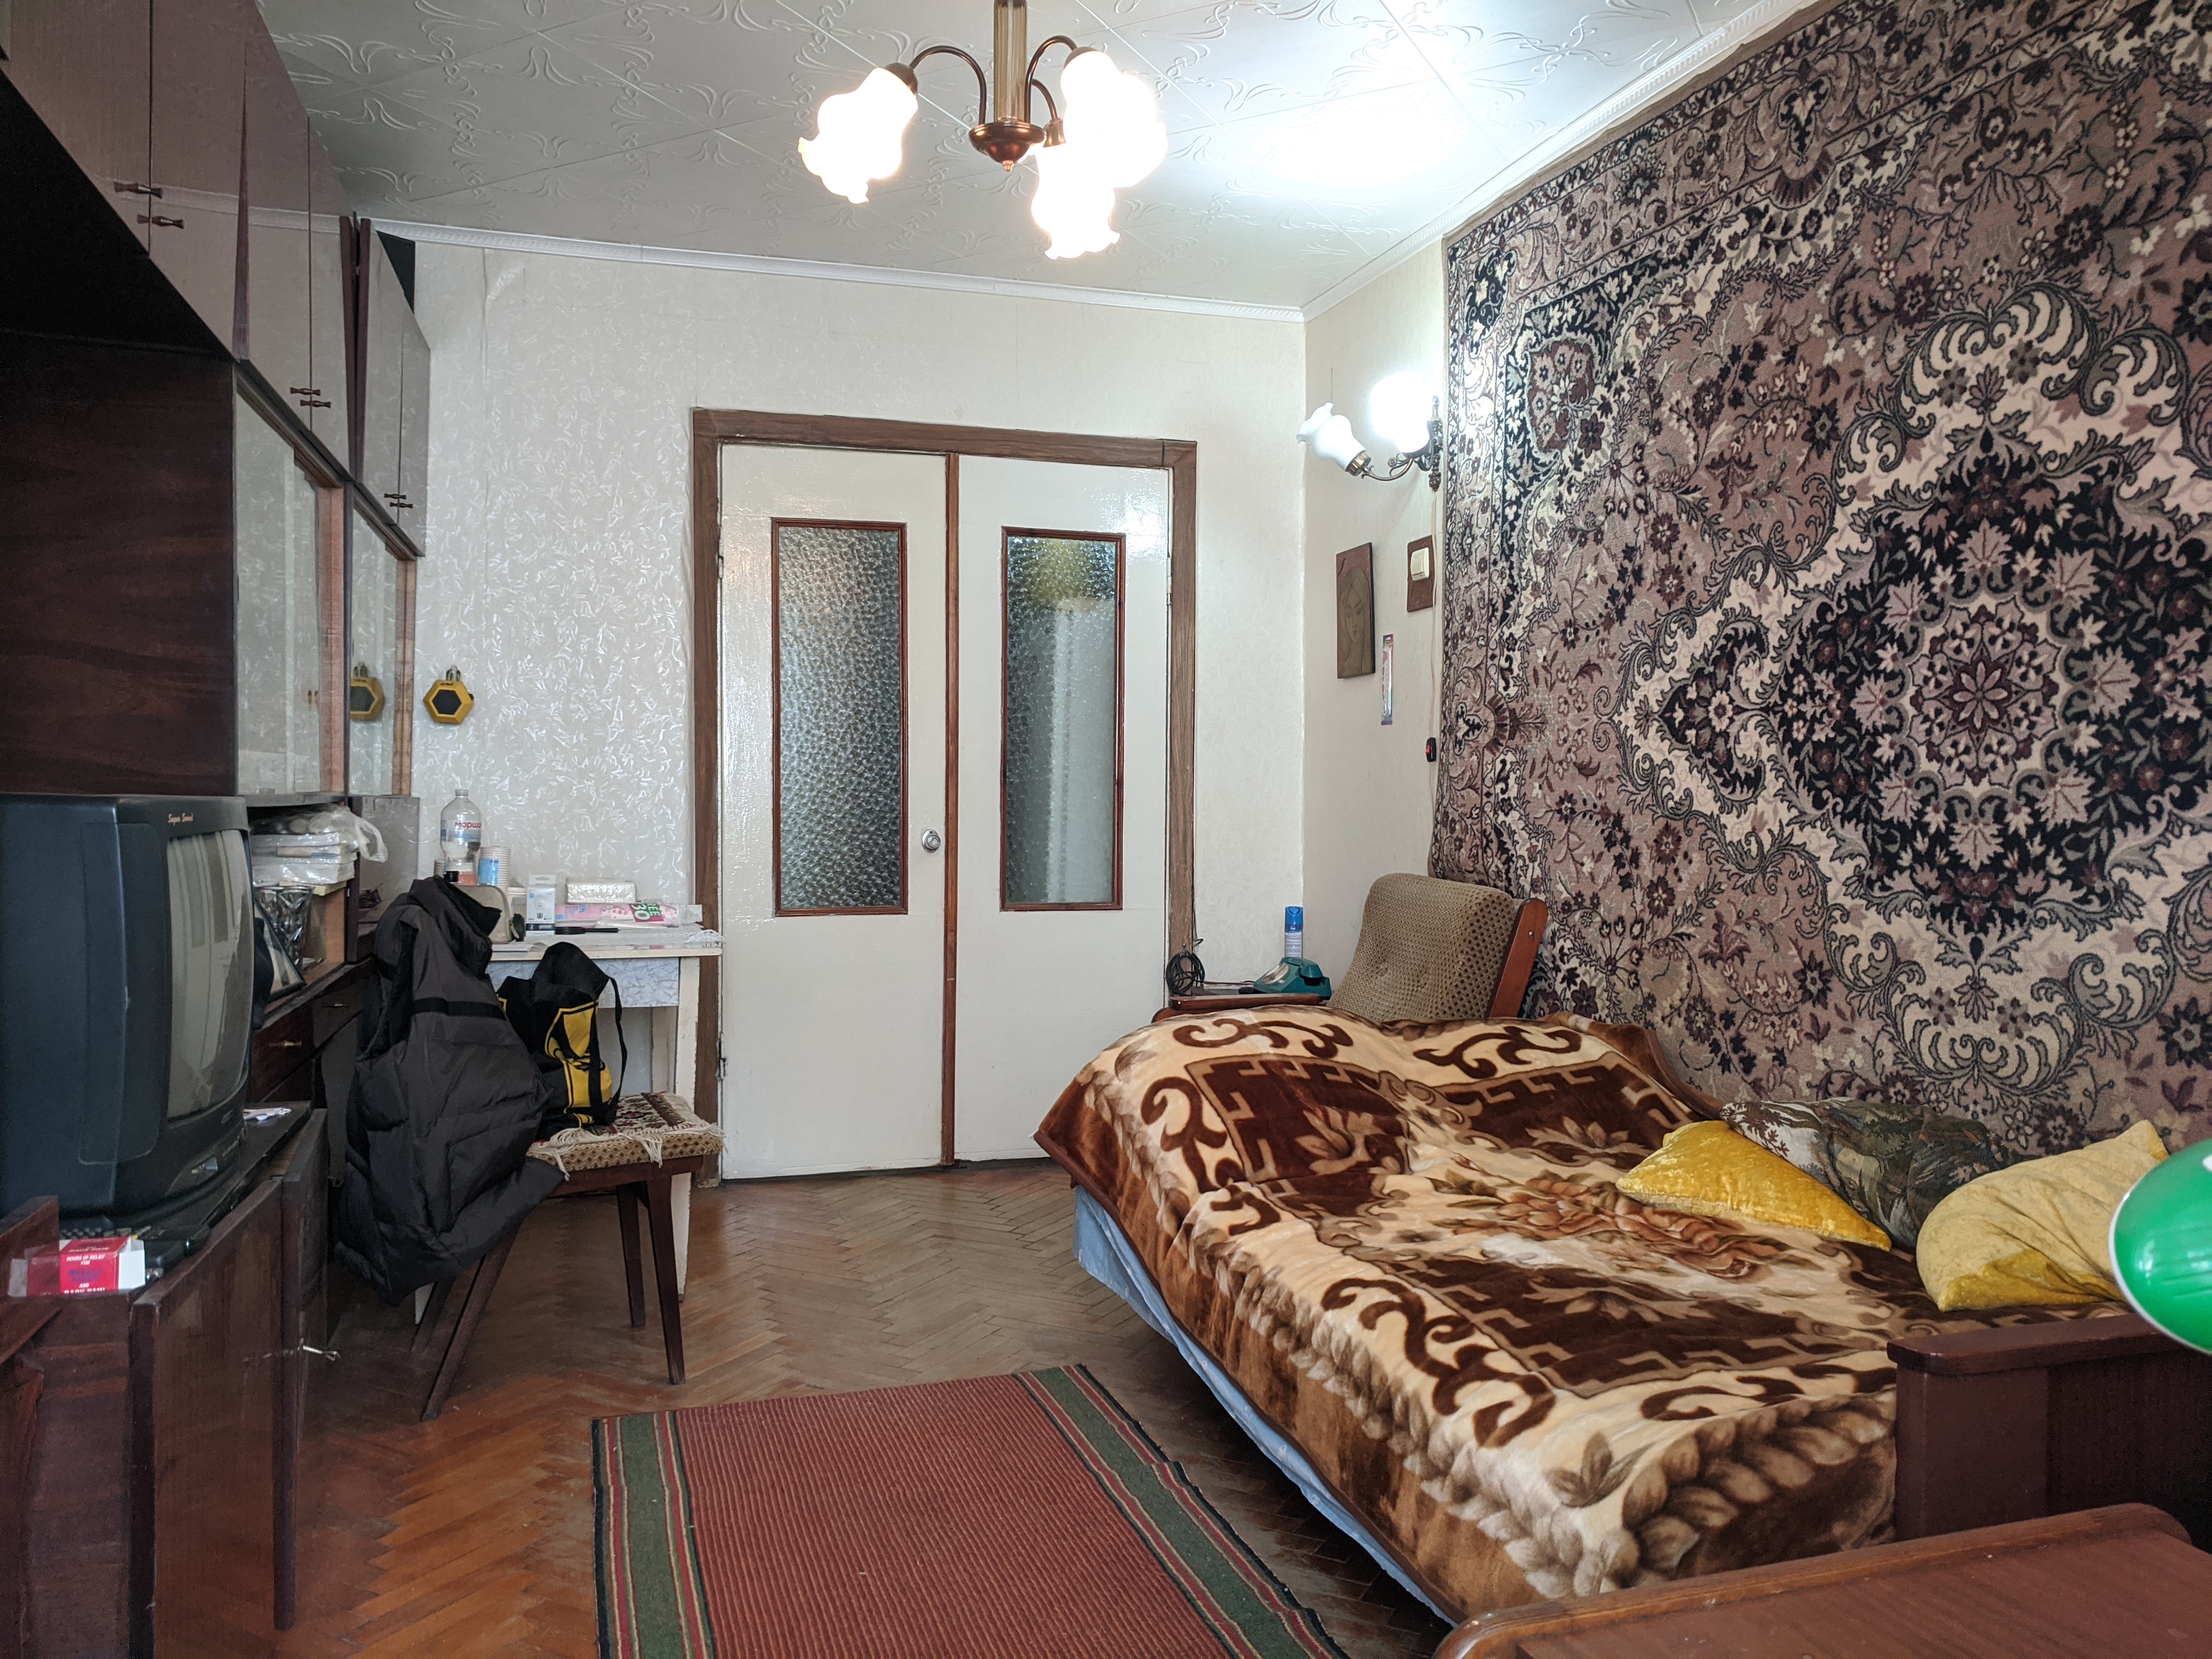 VÂNDUT Apartament de vânzare, Chișinău, sec. Râșcani, 2 odăi separate, 47 m2, et.1